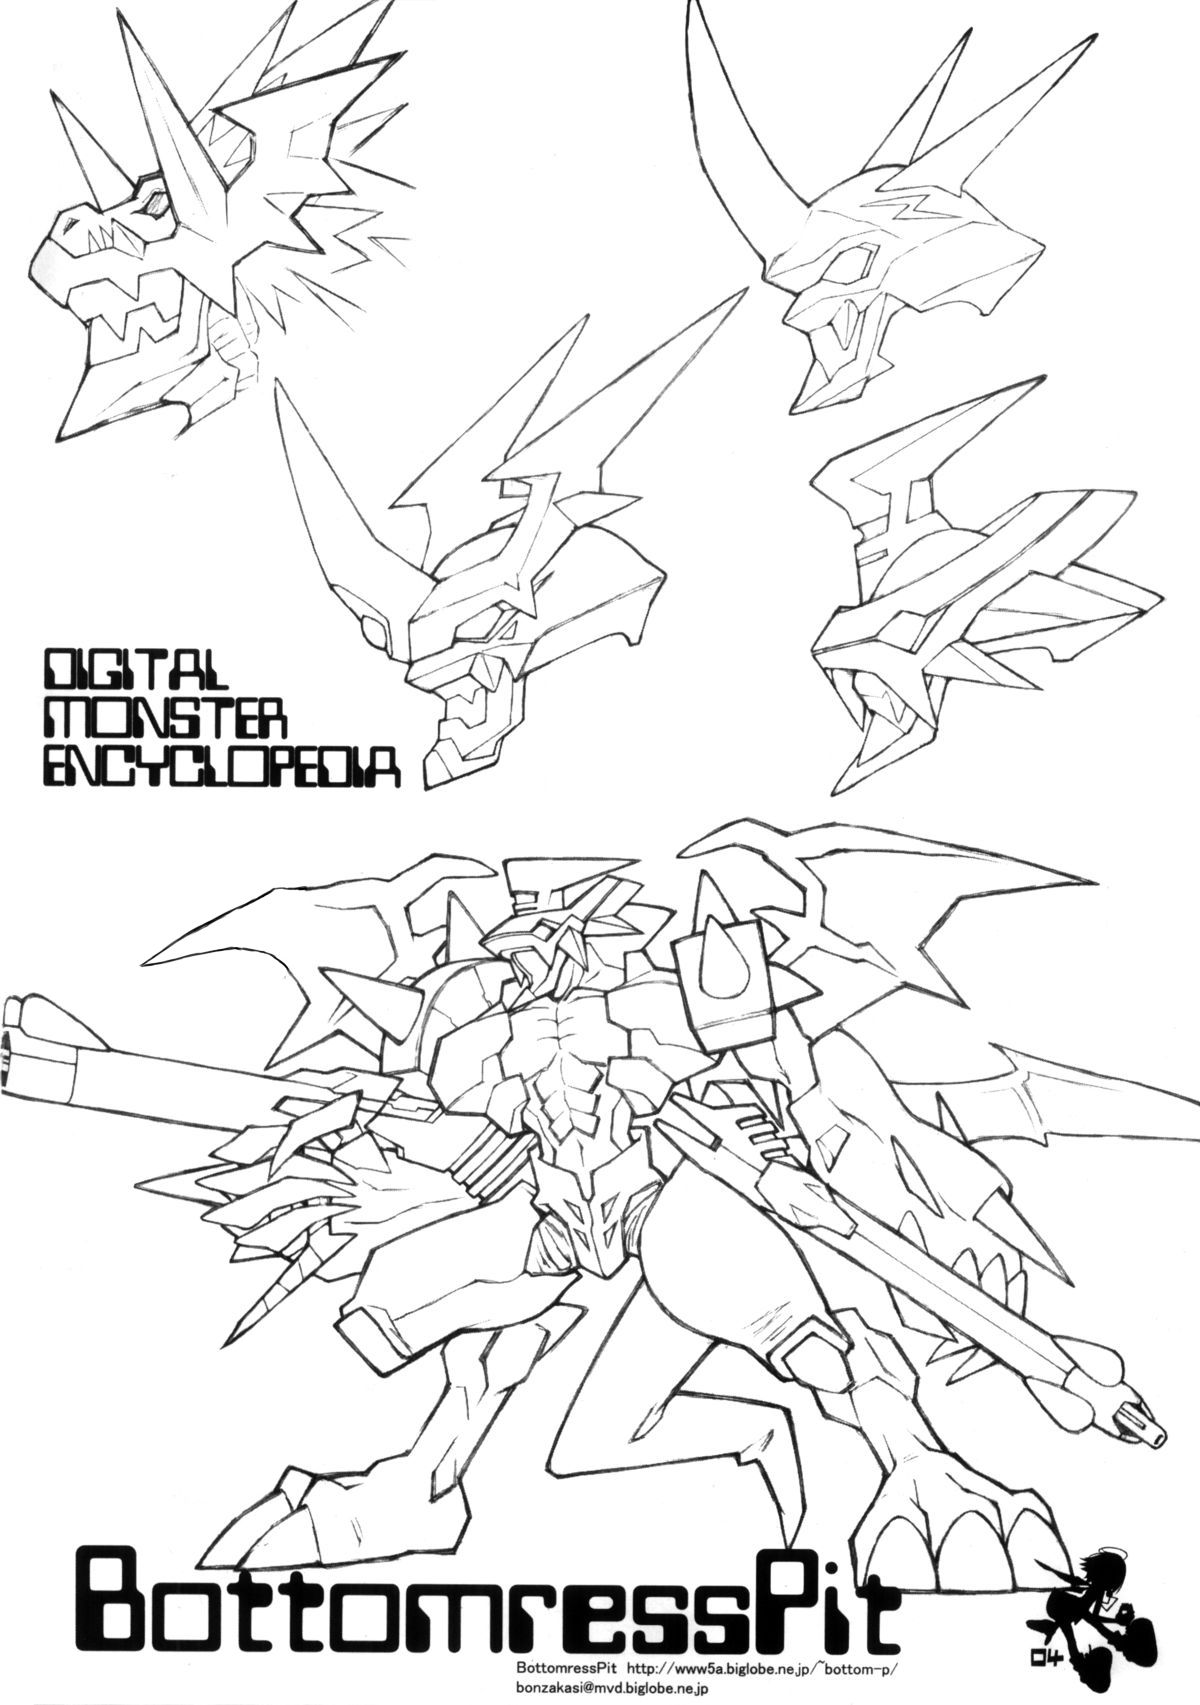 (C61) [Bottomress Pit (盆座菓子)] Digimon Queen 01+ (デジモンアドベンチャー)[無修正] [カラー化]